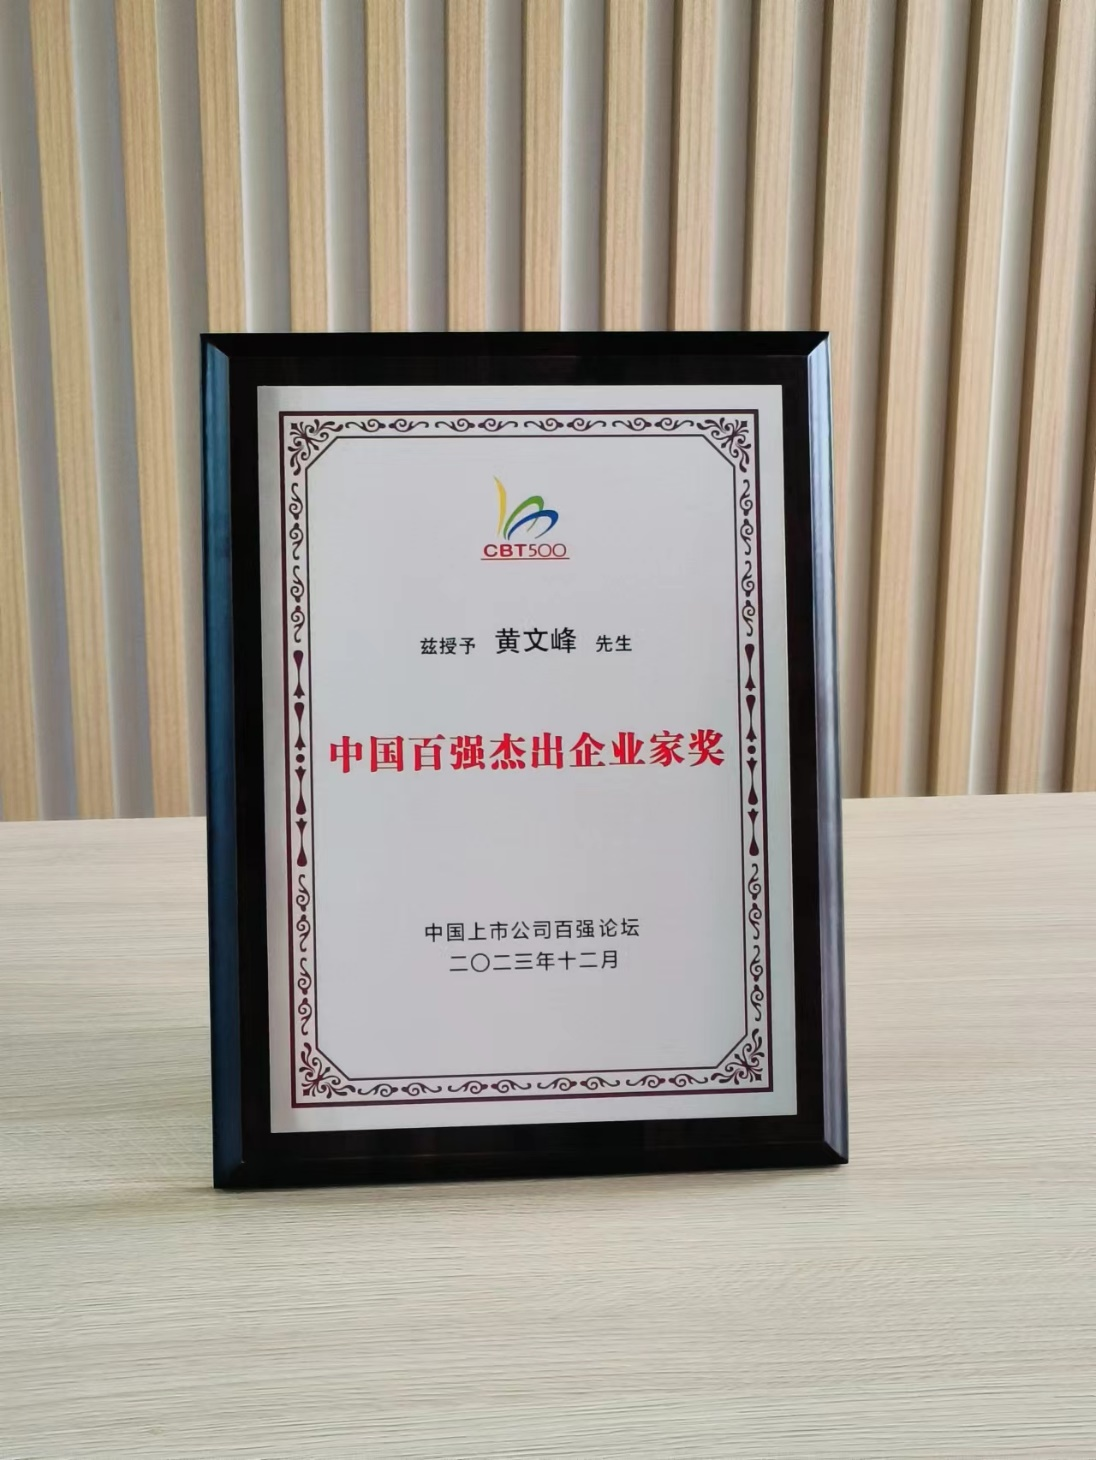 亚搏官方董事长黄文峰先生荣获“中国百强杰出企业家奖”